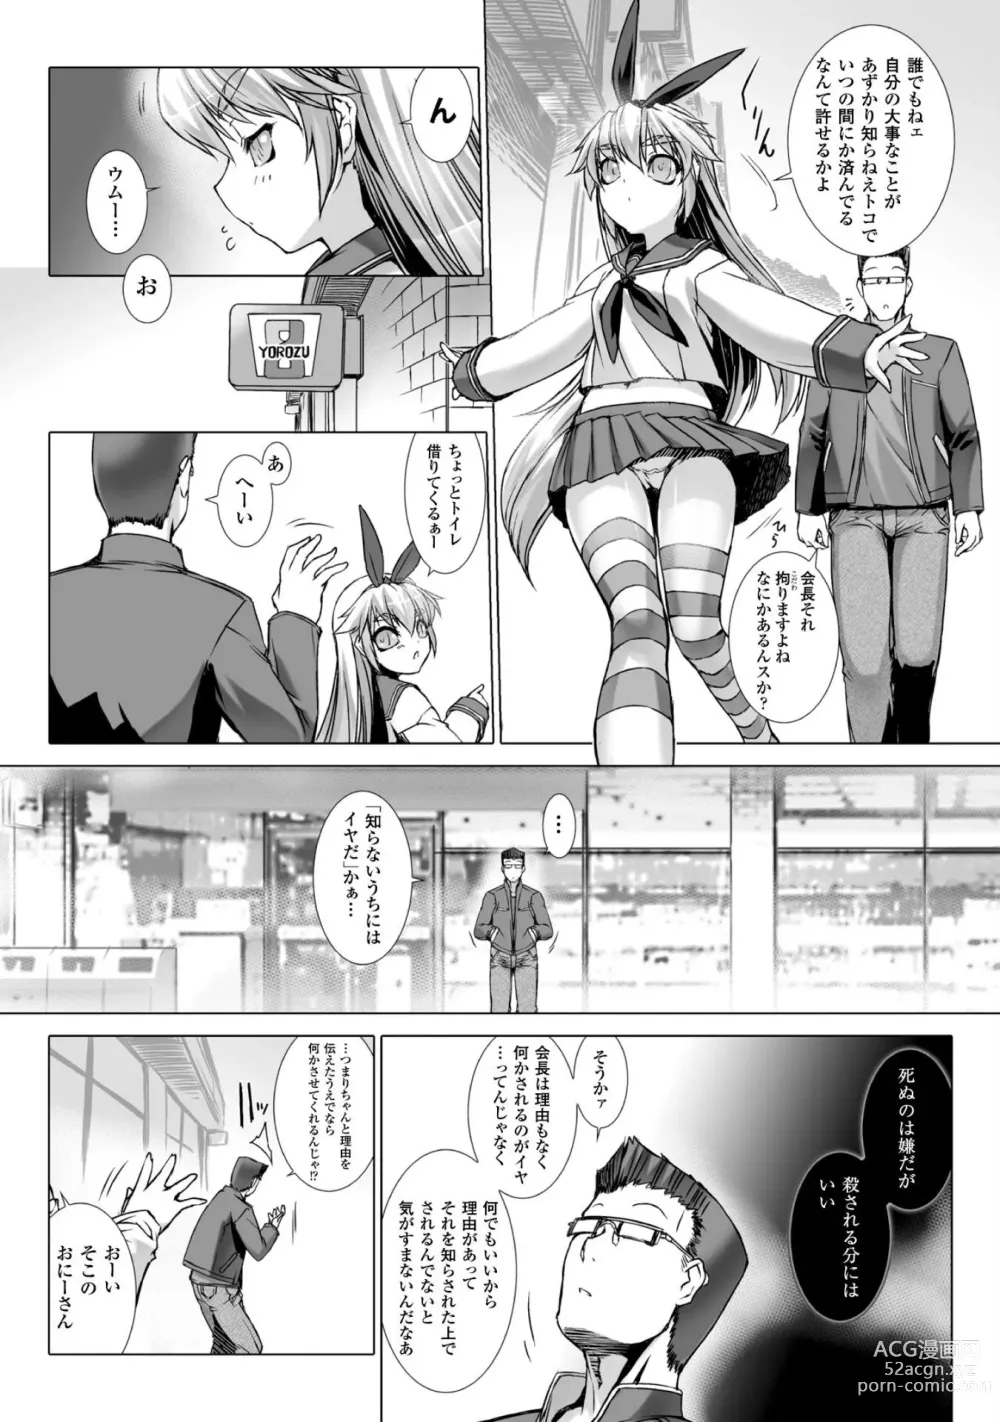 Page 7 of manga Ziggurat 6